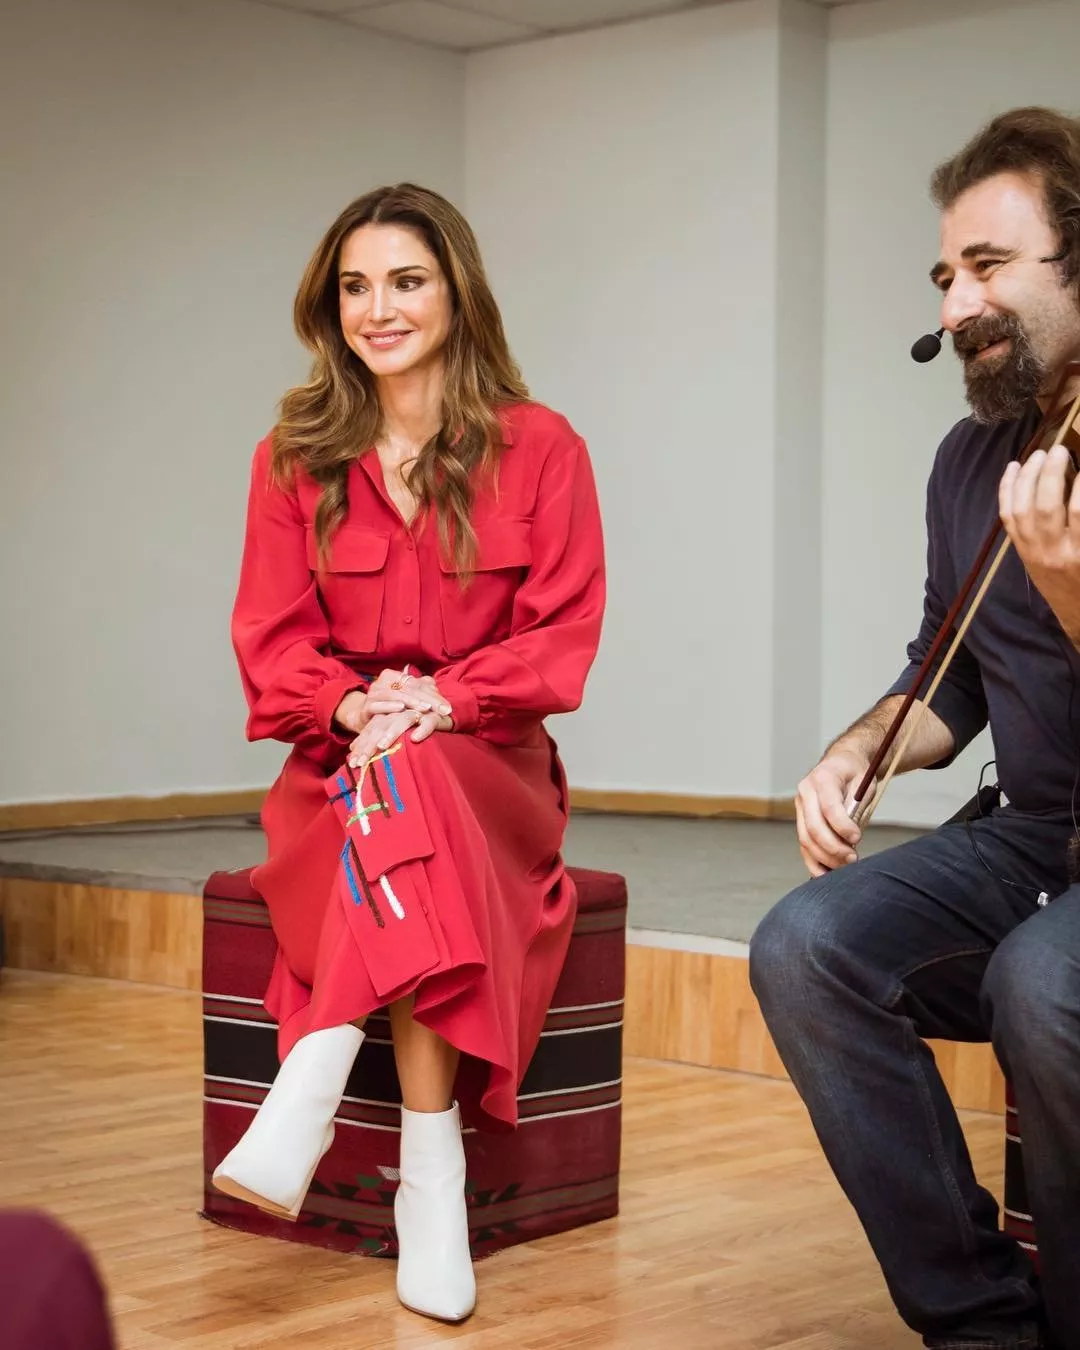 الملكة رانيا في الأردن: إطلالتان نادرتان تعكسان أسلوبها المميّز في الموضة